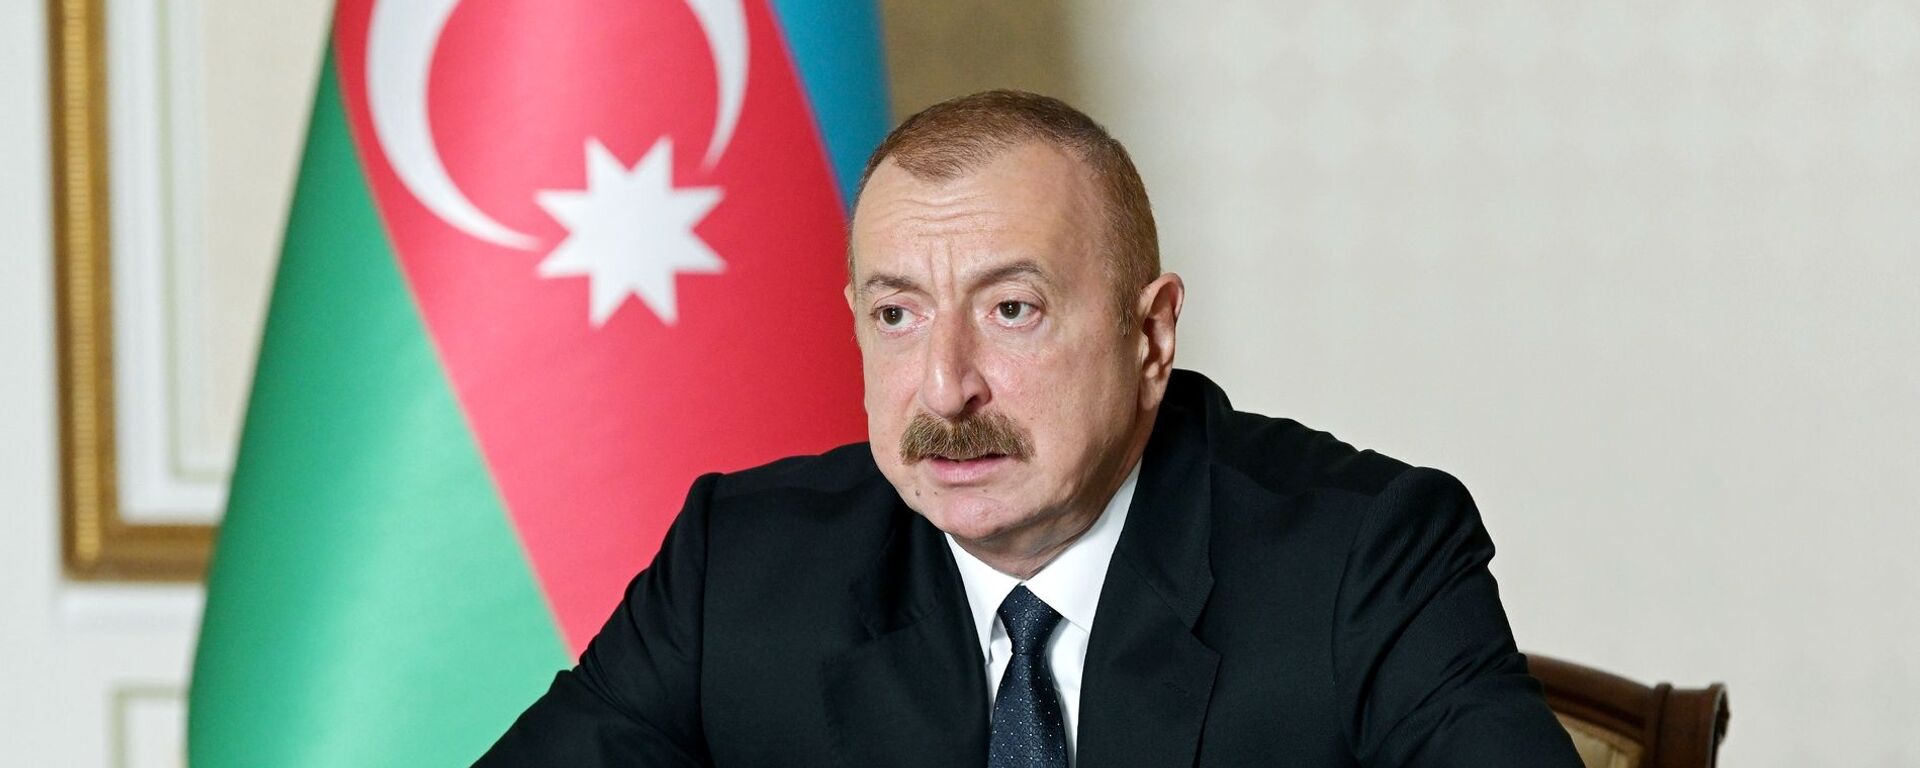 Iljam Alíev, presidente de Azerbaiyán - Sputnik Mundo, 1920, 14.08.2021